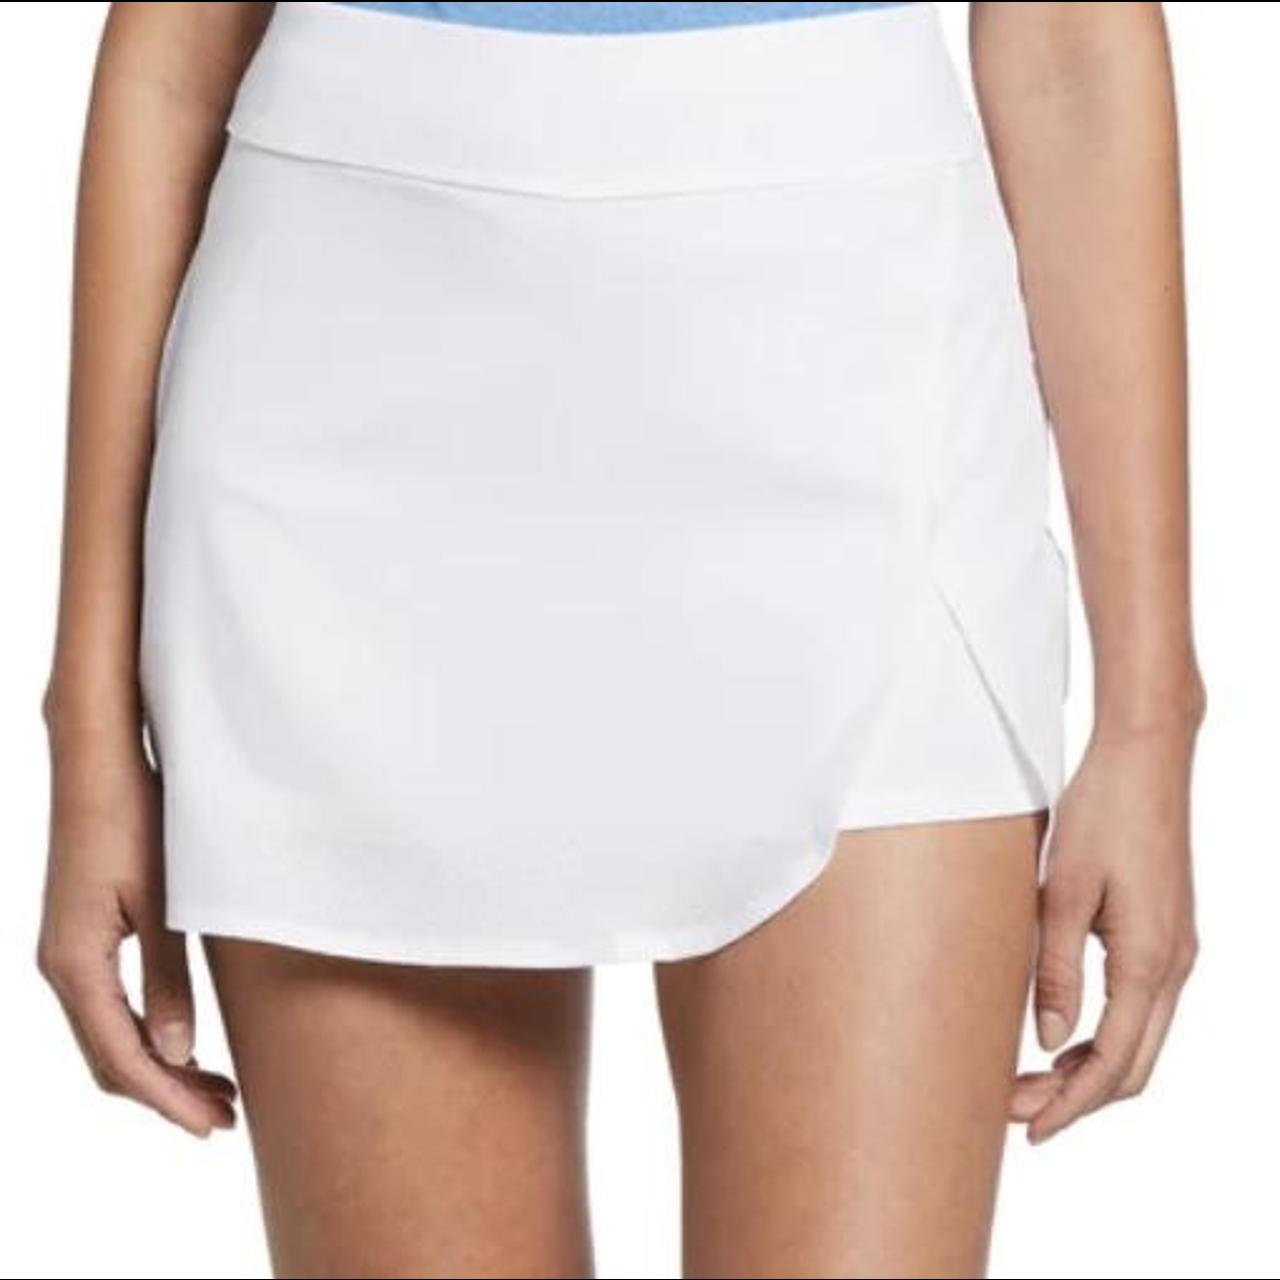 Callaway women’s white golf skirt With pockets... - Depop